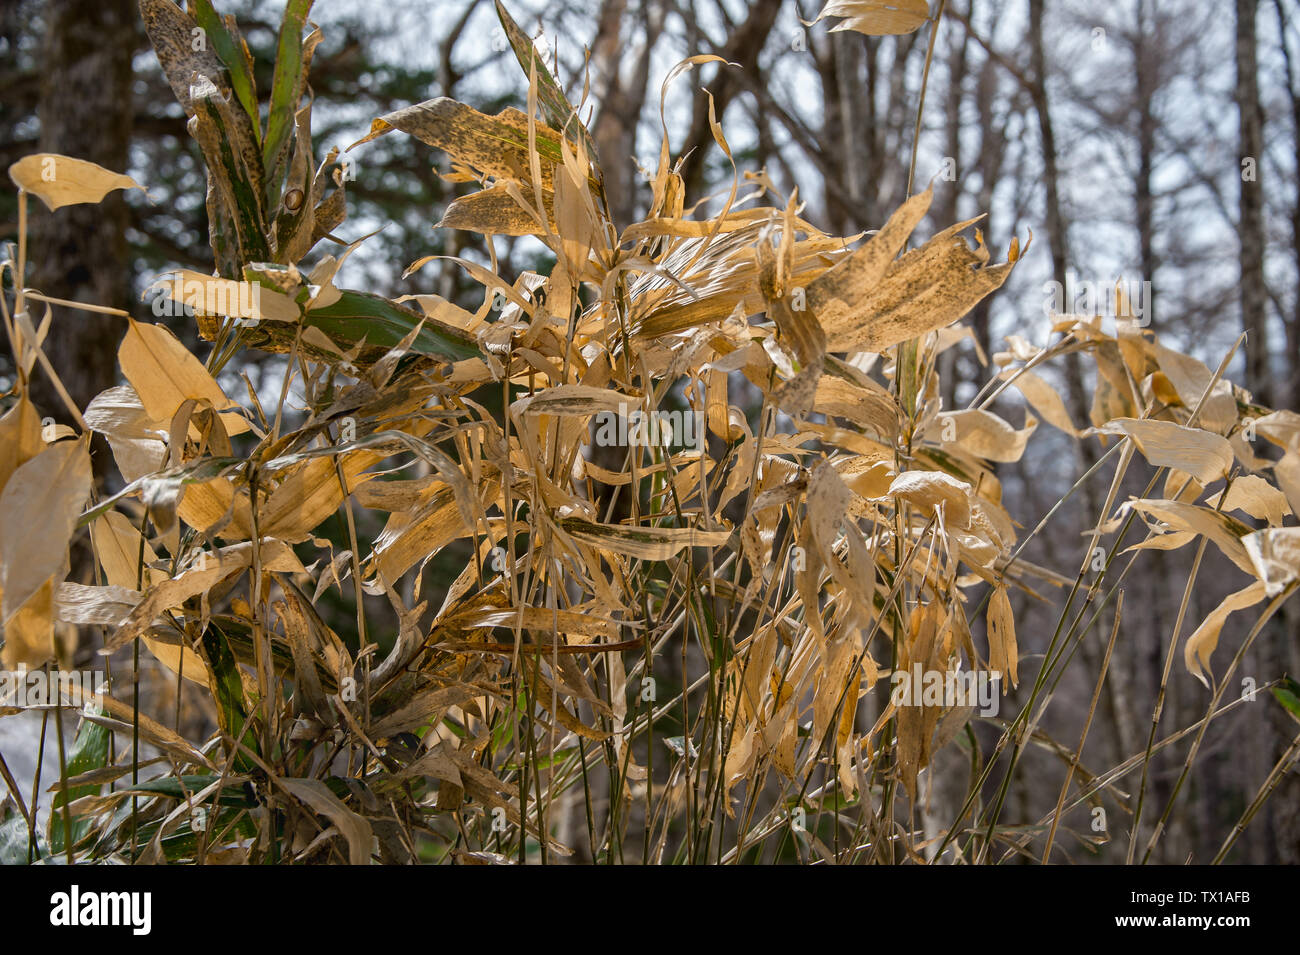 Les tiges de bambou séchées dans une forêt d'hiver Banque D'Images